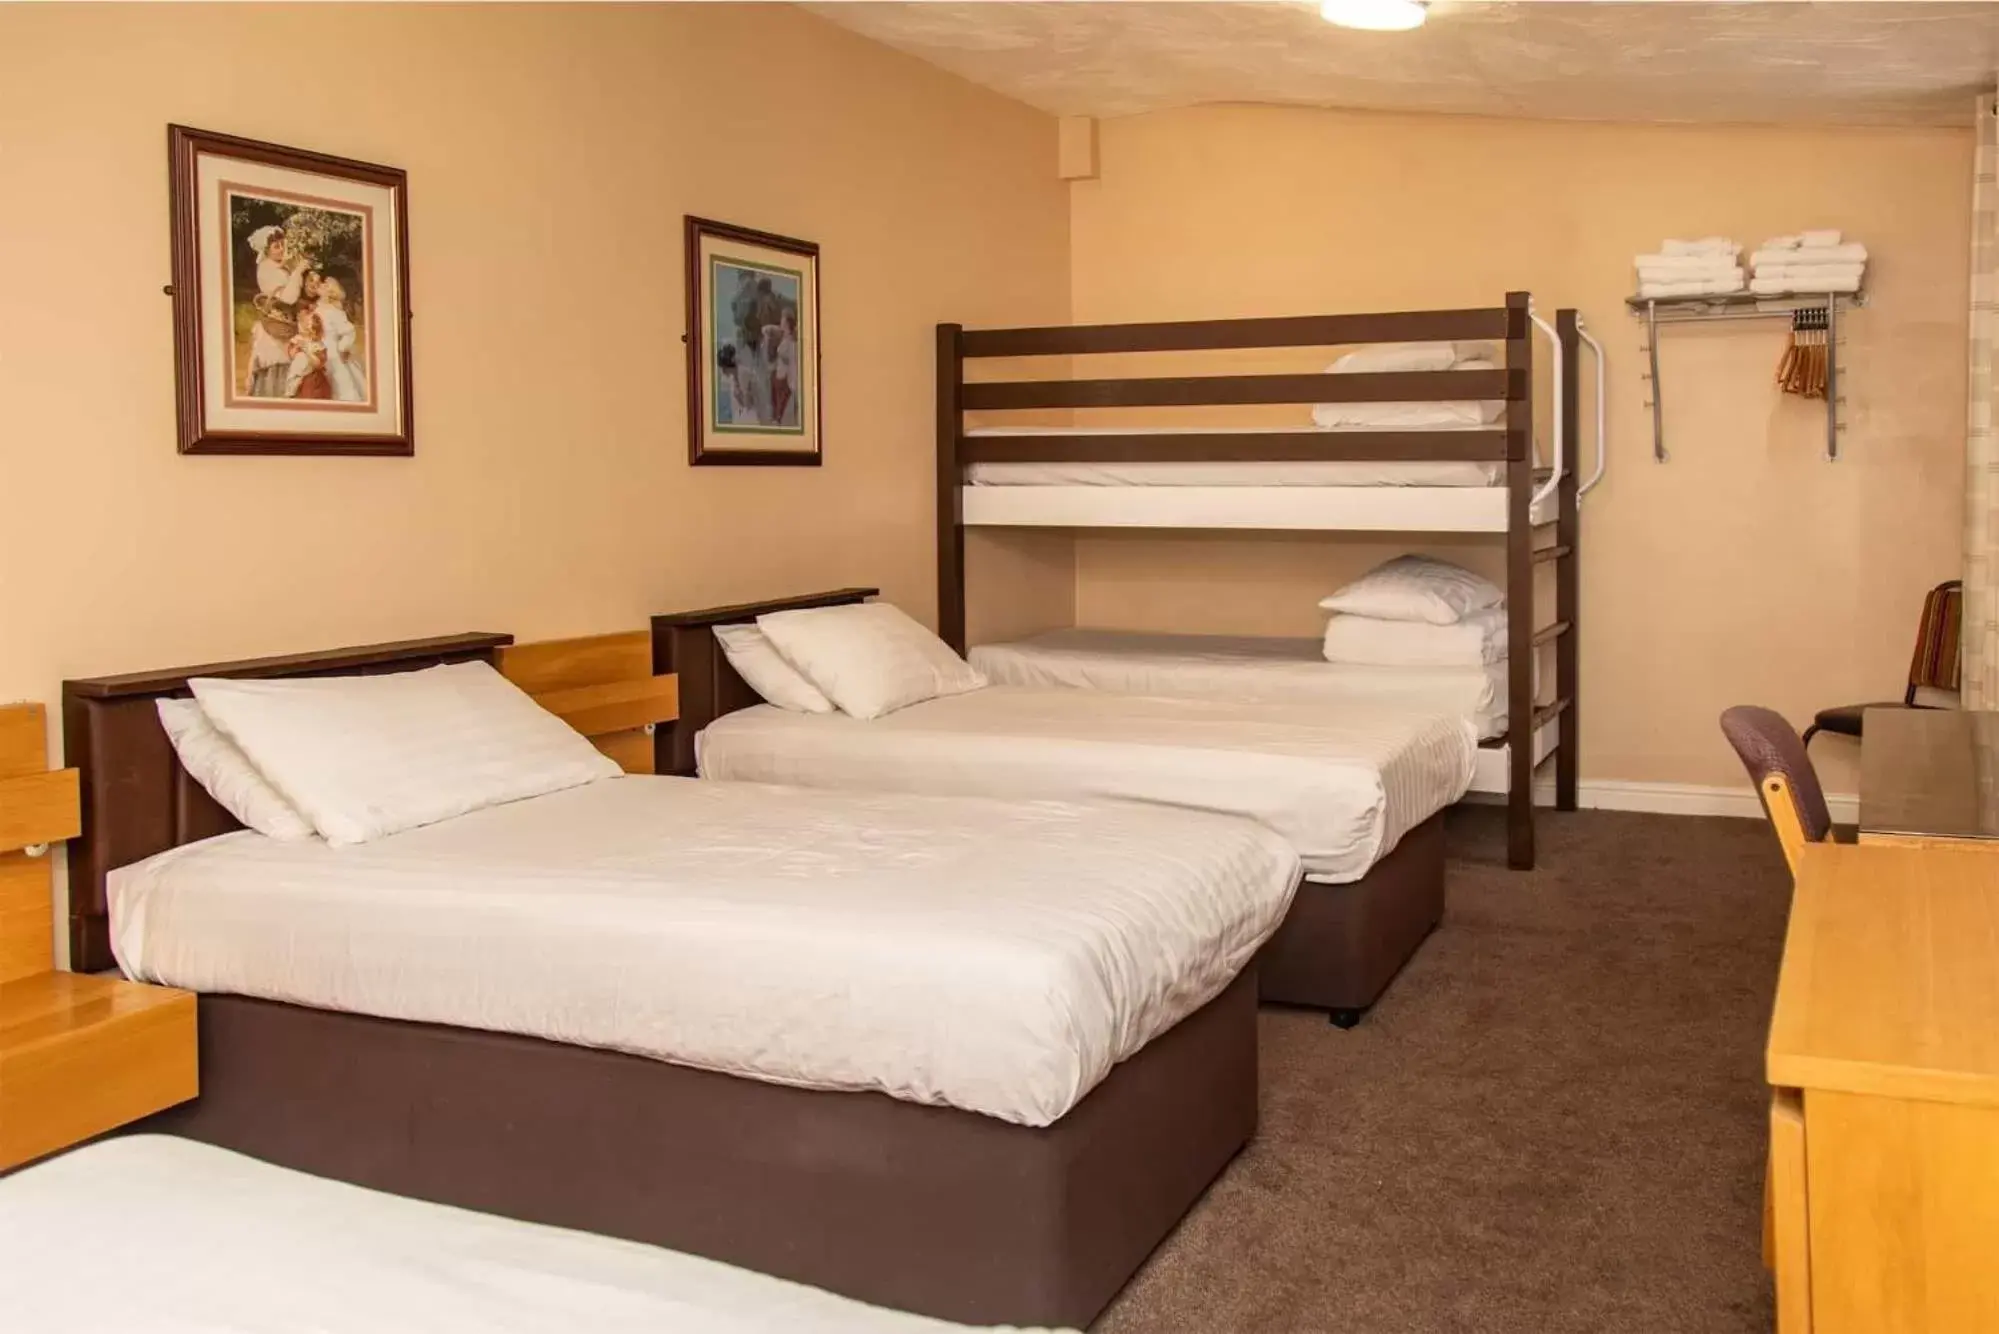 Bedroom, Bed in The Beechfield Hotel